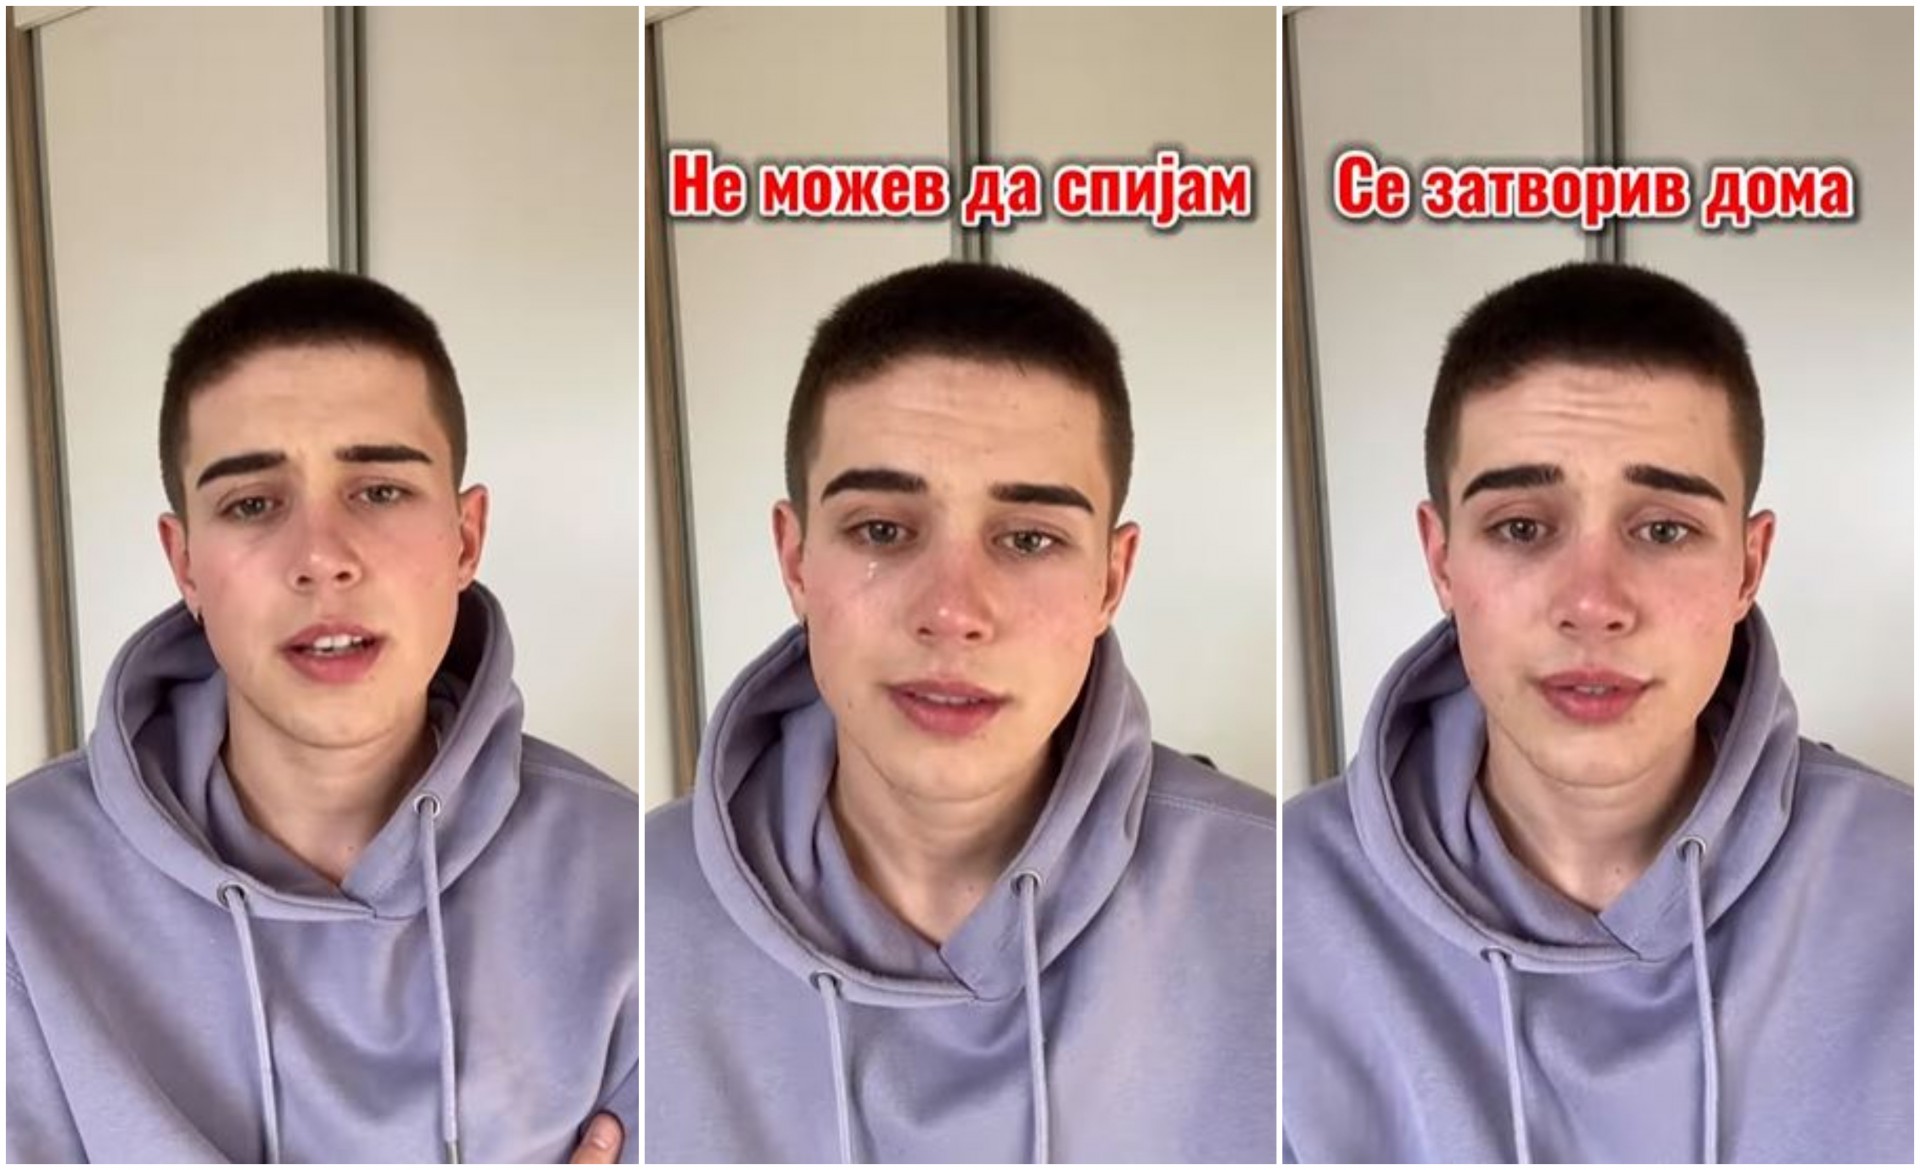 Александар Динев со солзи во очите проговори за 4-годишната битка со сајбер насилство: Не можев да спијам и се затворив дома (ВИДЕО)